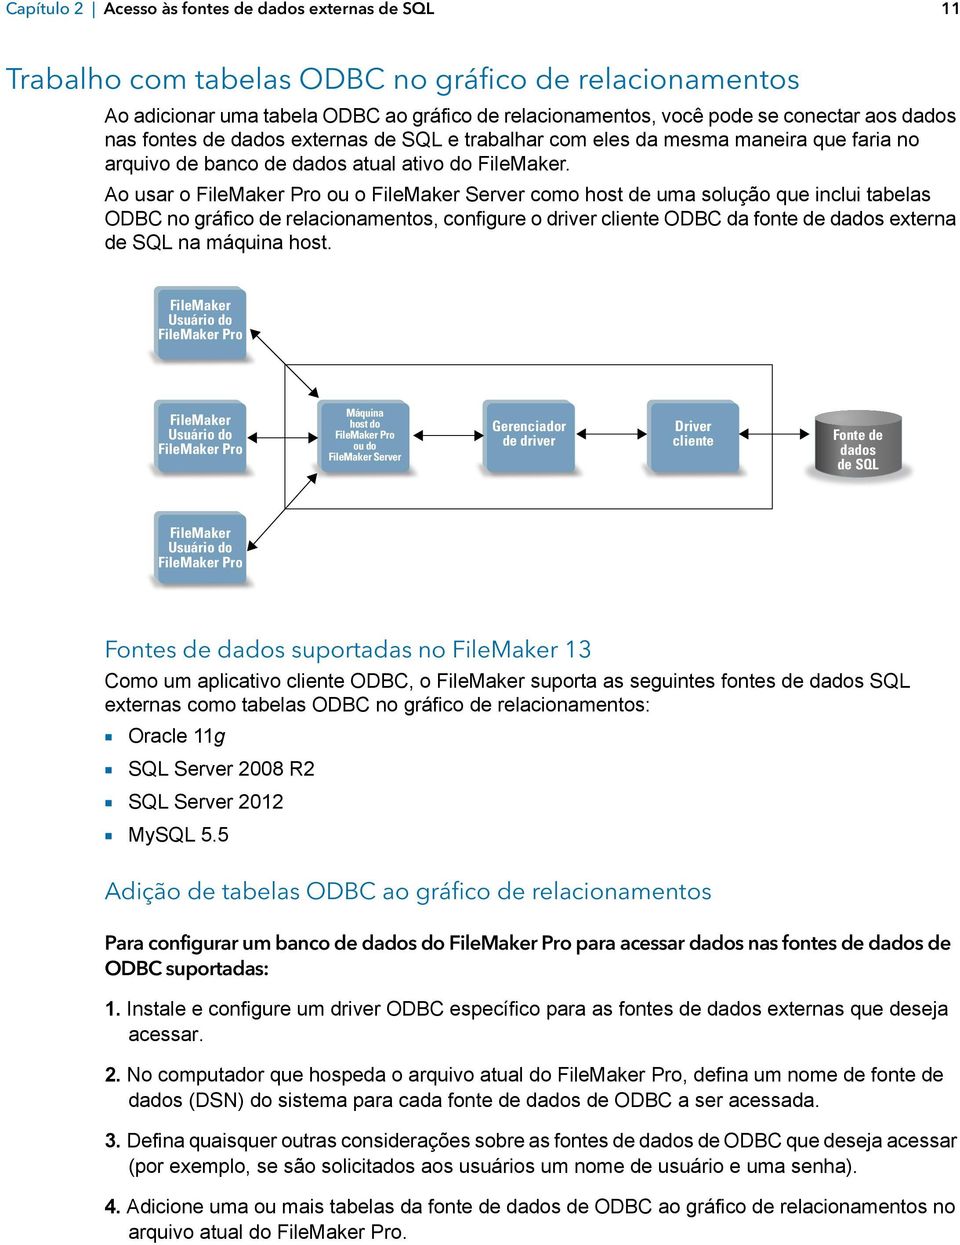 Ao usar o FileMaker Pro ou o FileMaker Server como host de uma solução que inclui tabelas ODBC no gráfico de relacionamentos, configure o driver cliente ODBC da fonte de dados externa de SQL na